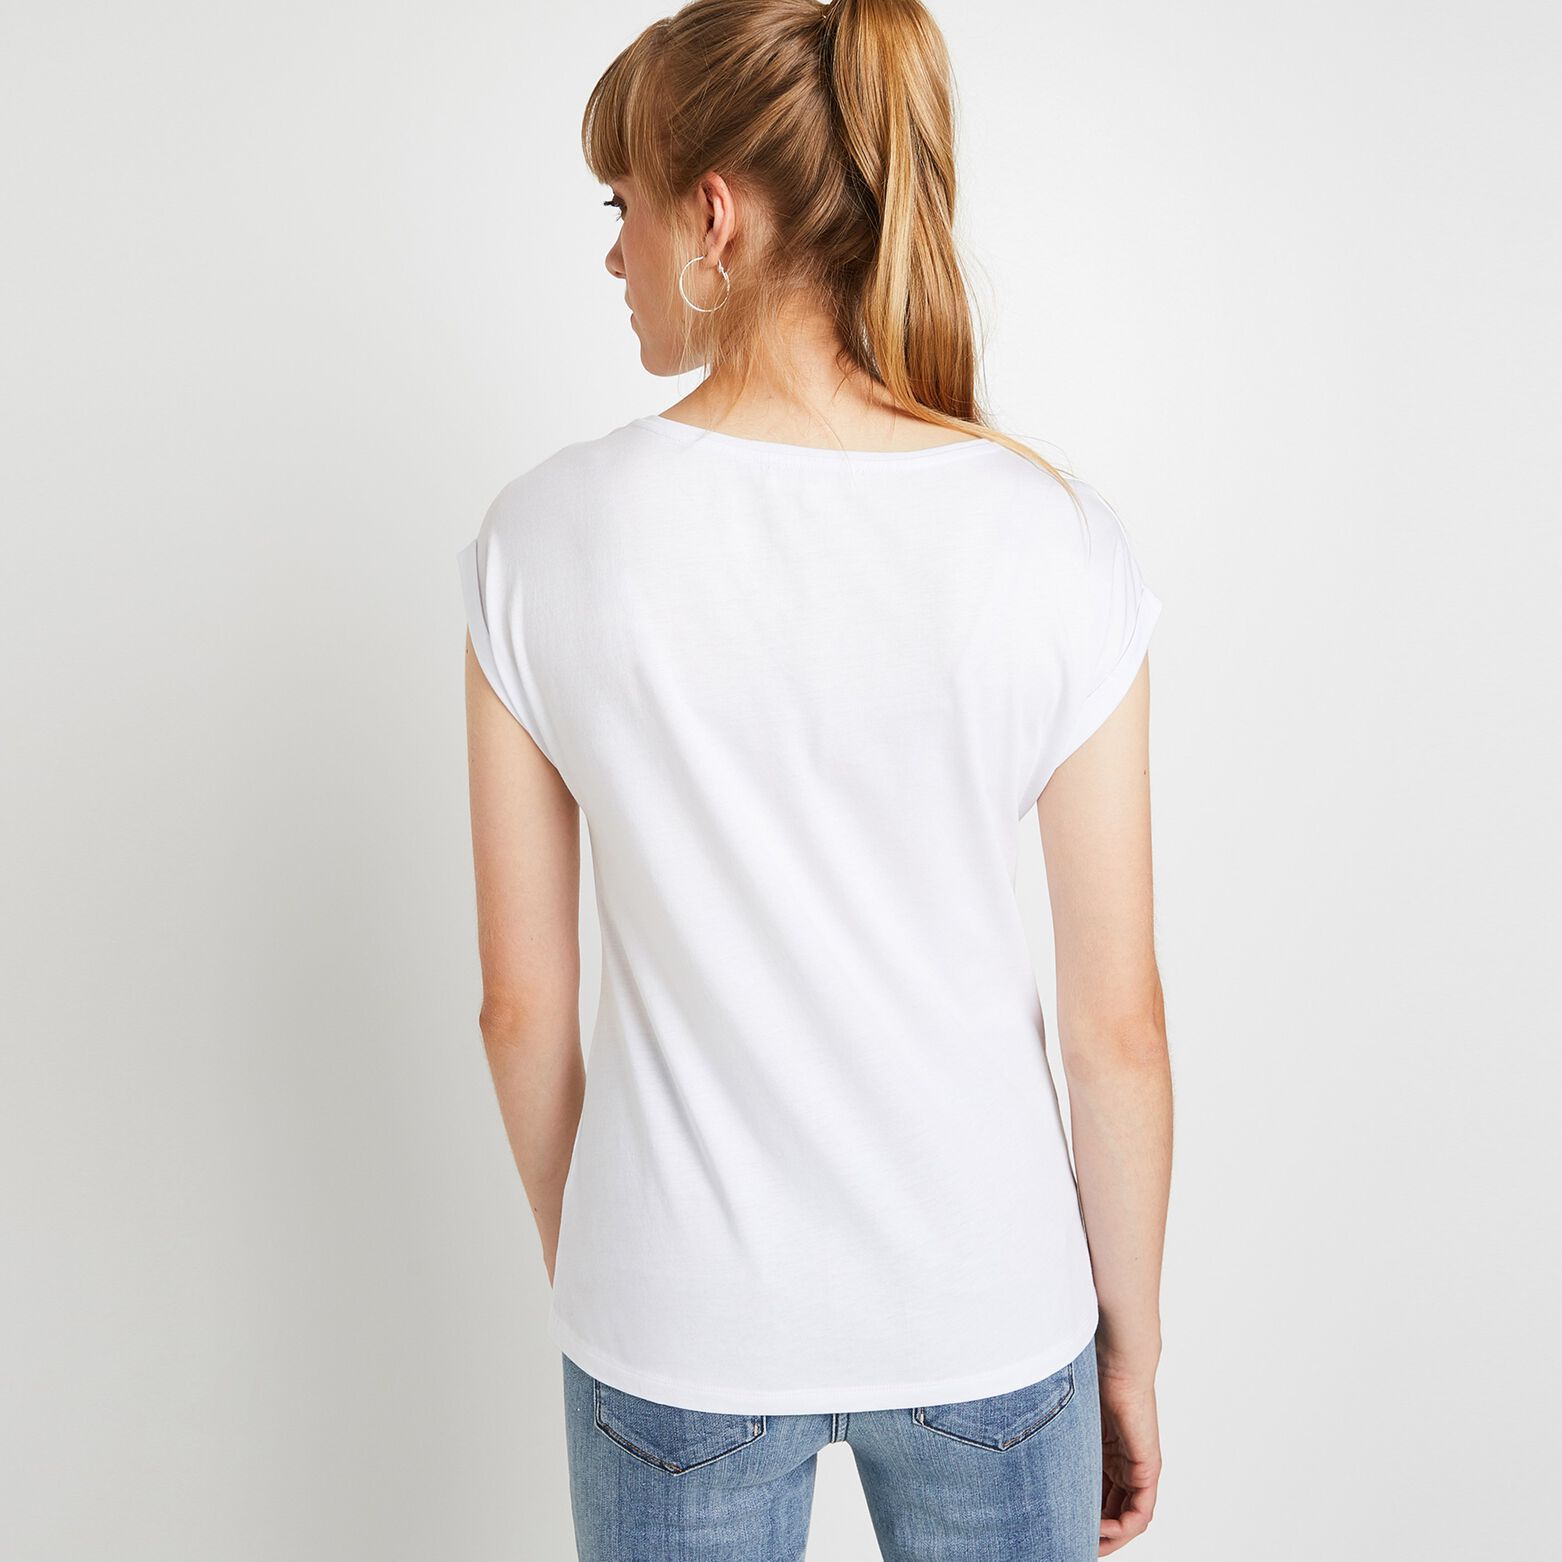 T-shirt manches courtes imprimé femme